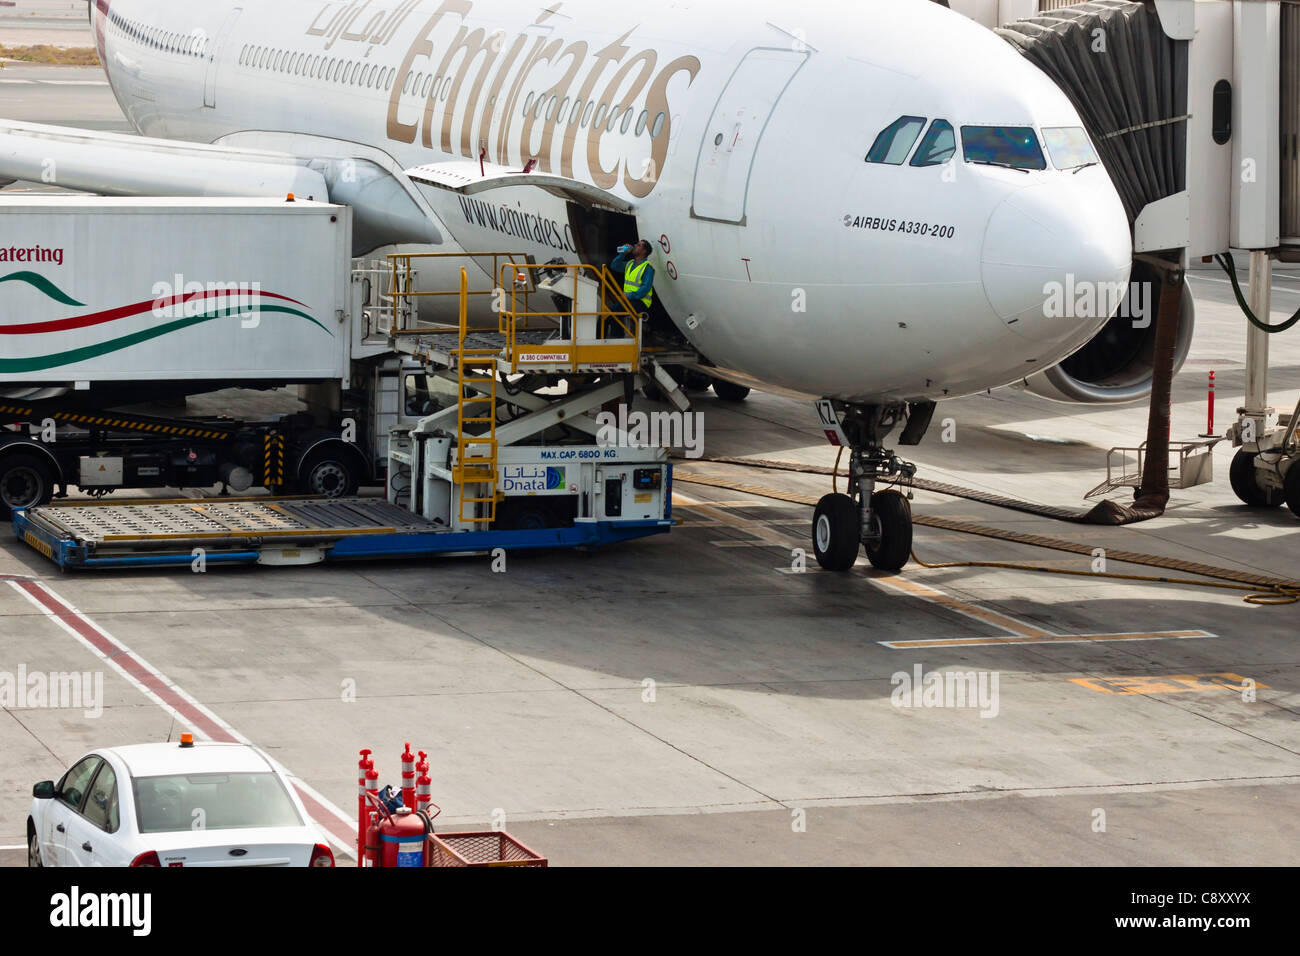 Dettaglio di Airbus A330-200, l'Aeroporto Internazionale di Dubai, Emirati Arabi Uniti. Foto Stock